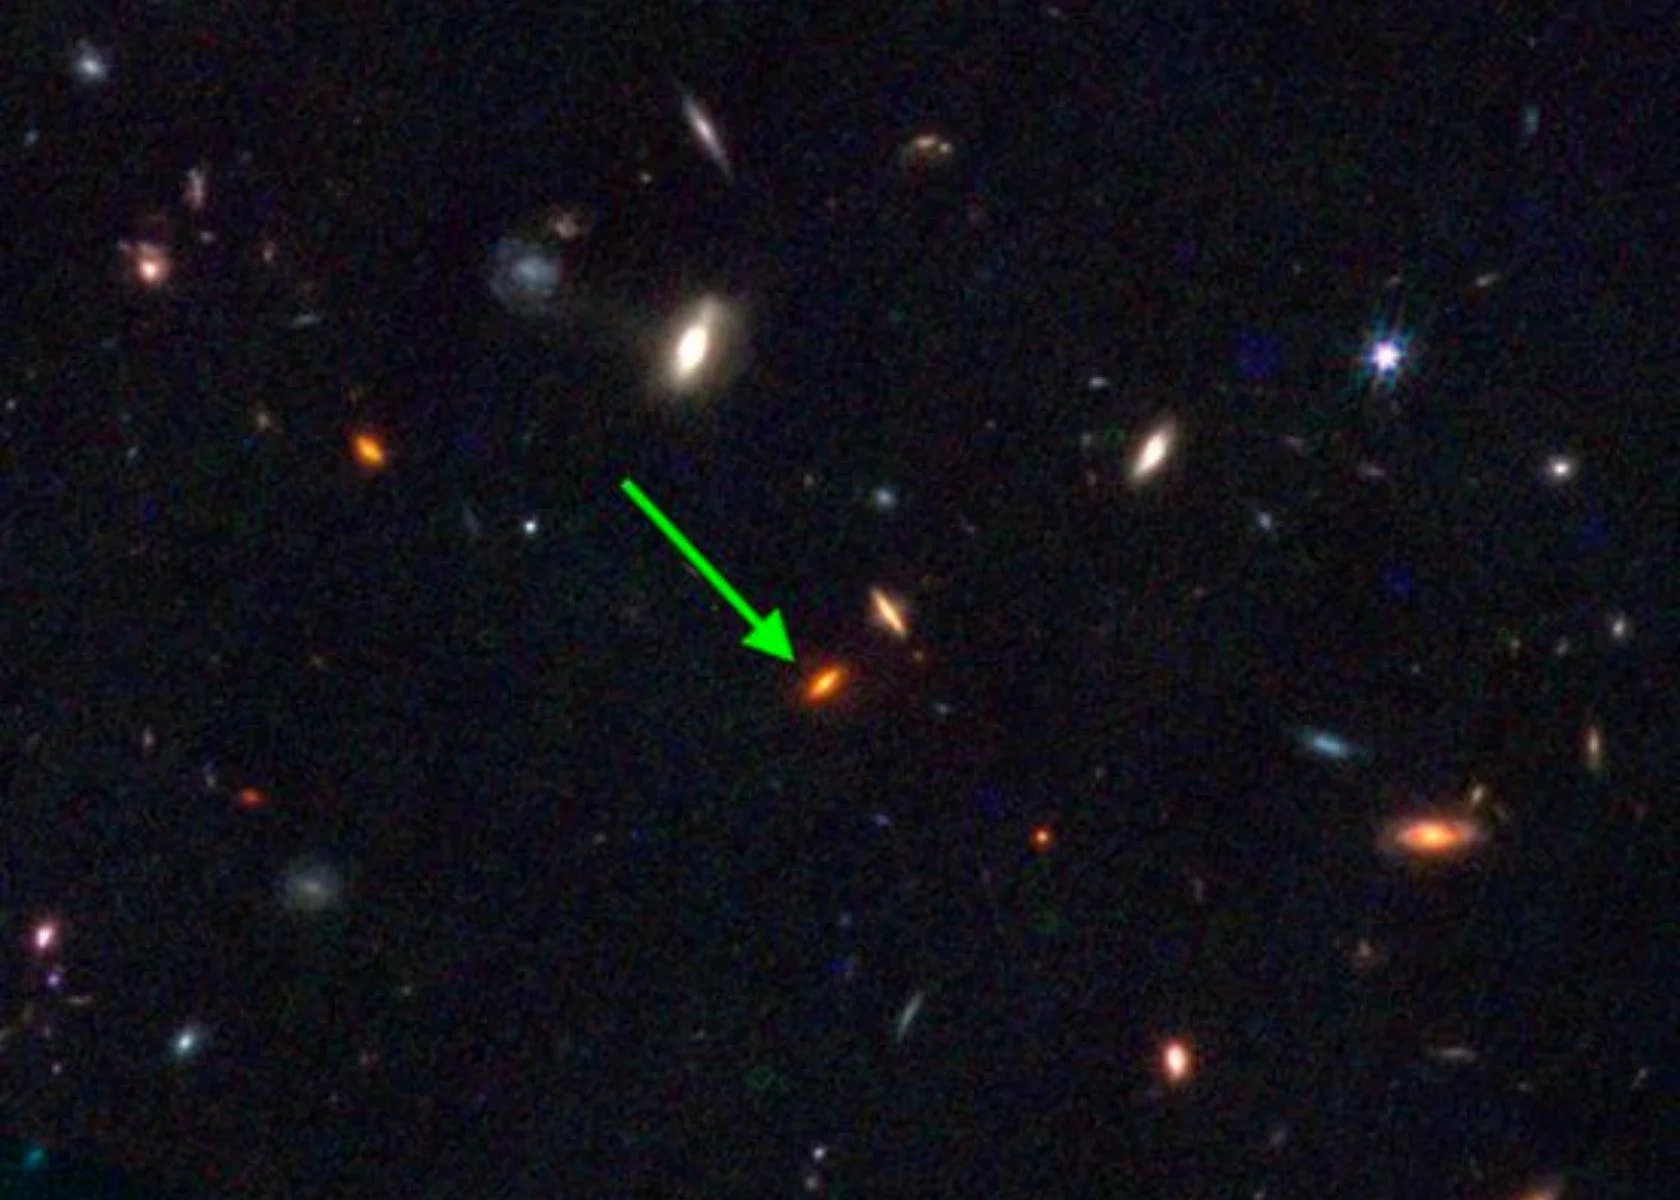 Una nuova galassia ZF-UDS-7329 scoperta del telescopio James Webb minaccia seriamente le attuali leggi della cosmologia